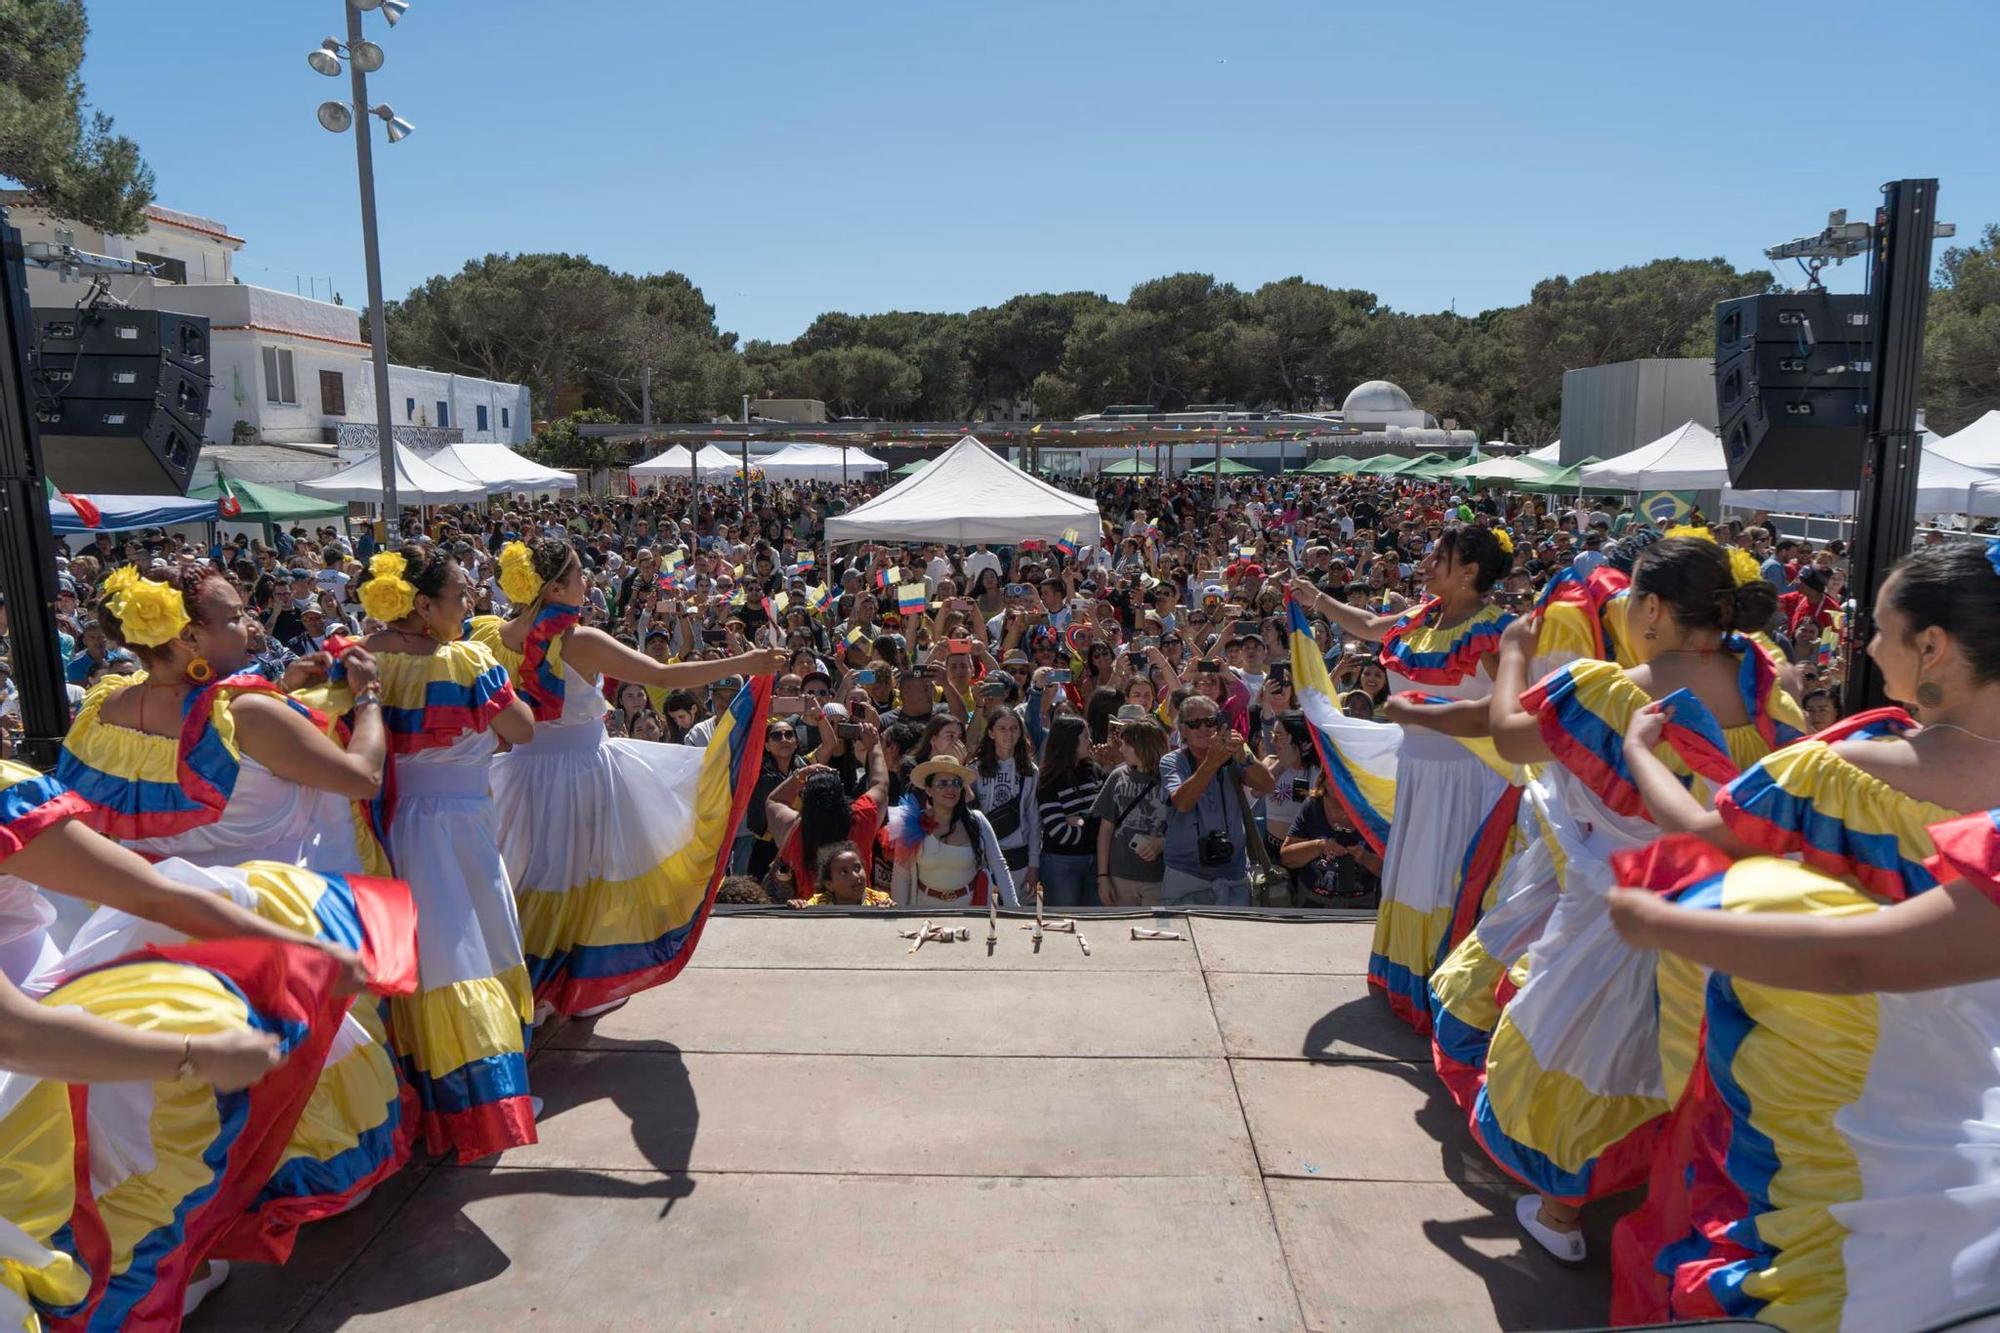 Mira aquí todas las fotos de la Fiesta Intercultural de Formentera